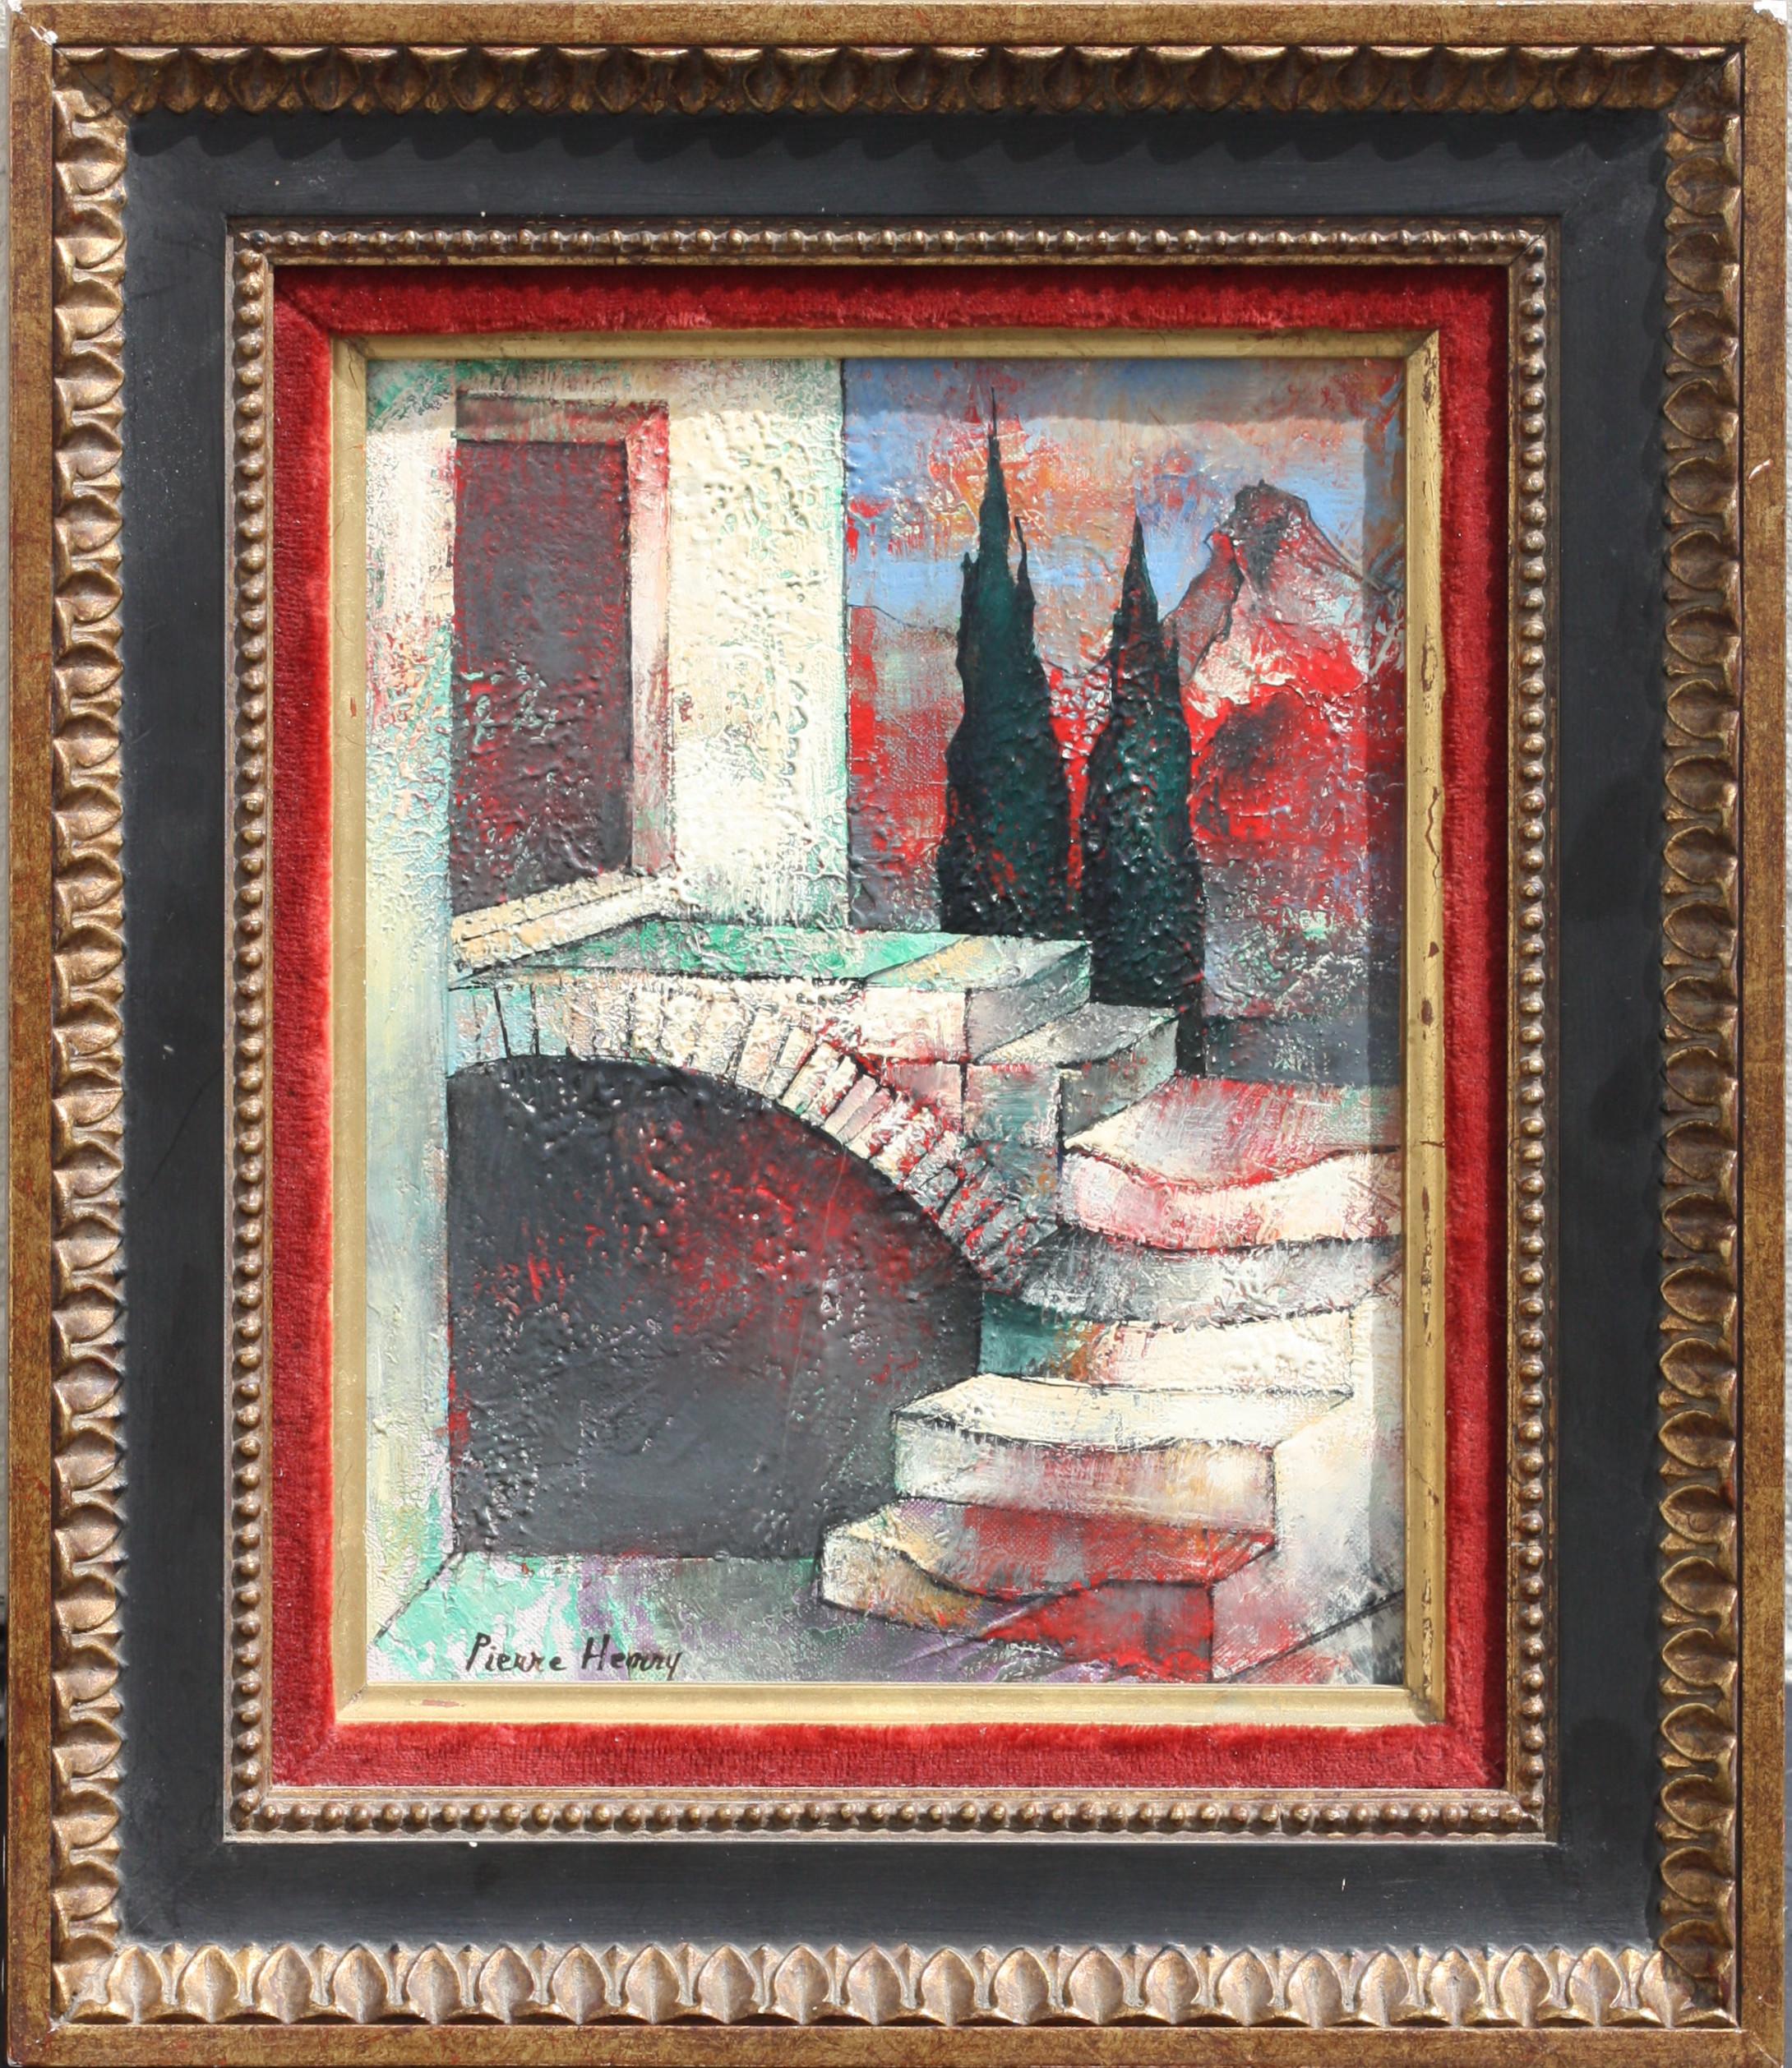 PIERRE-HENRY (1924-2015)
Gemälde, Öl auf Leinwand
9.5 x 7,5 in. (24,13 x 19,05 cm.) 
mit Rahmen
13.5 x 11,5 in. (34,29 x 29,21 cm.)
